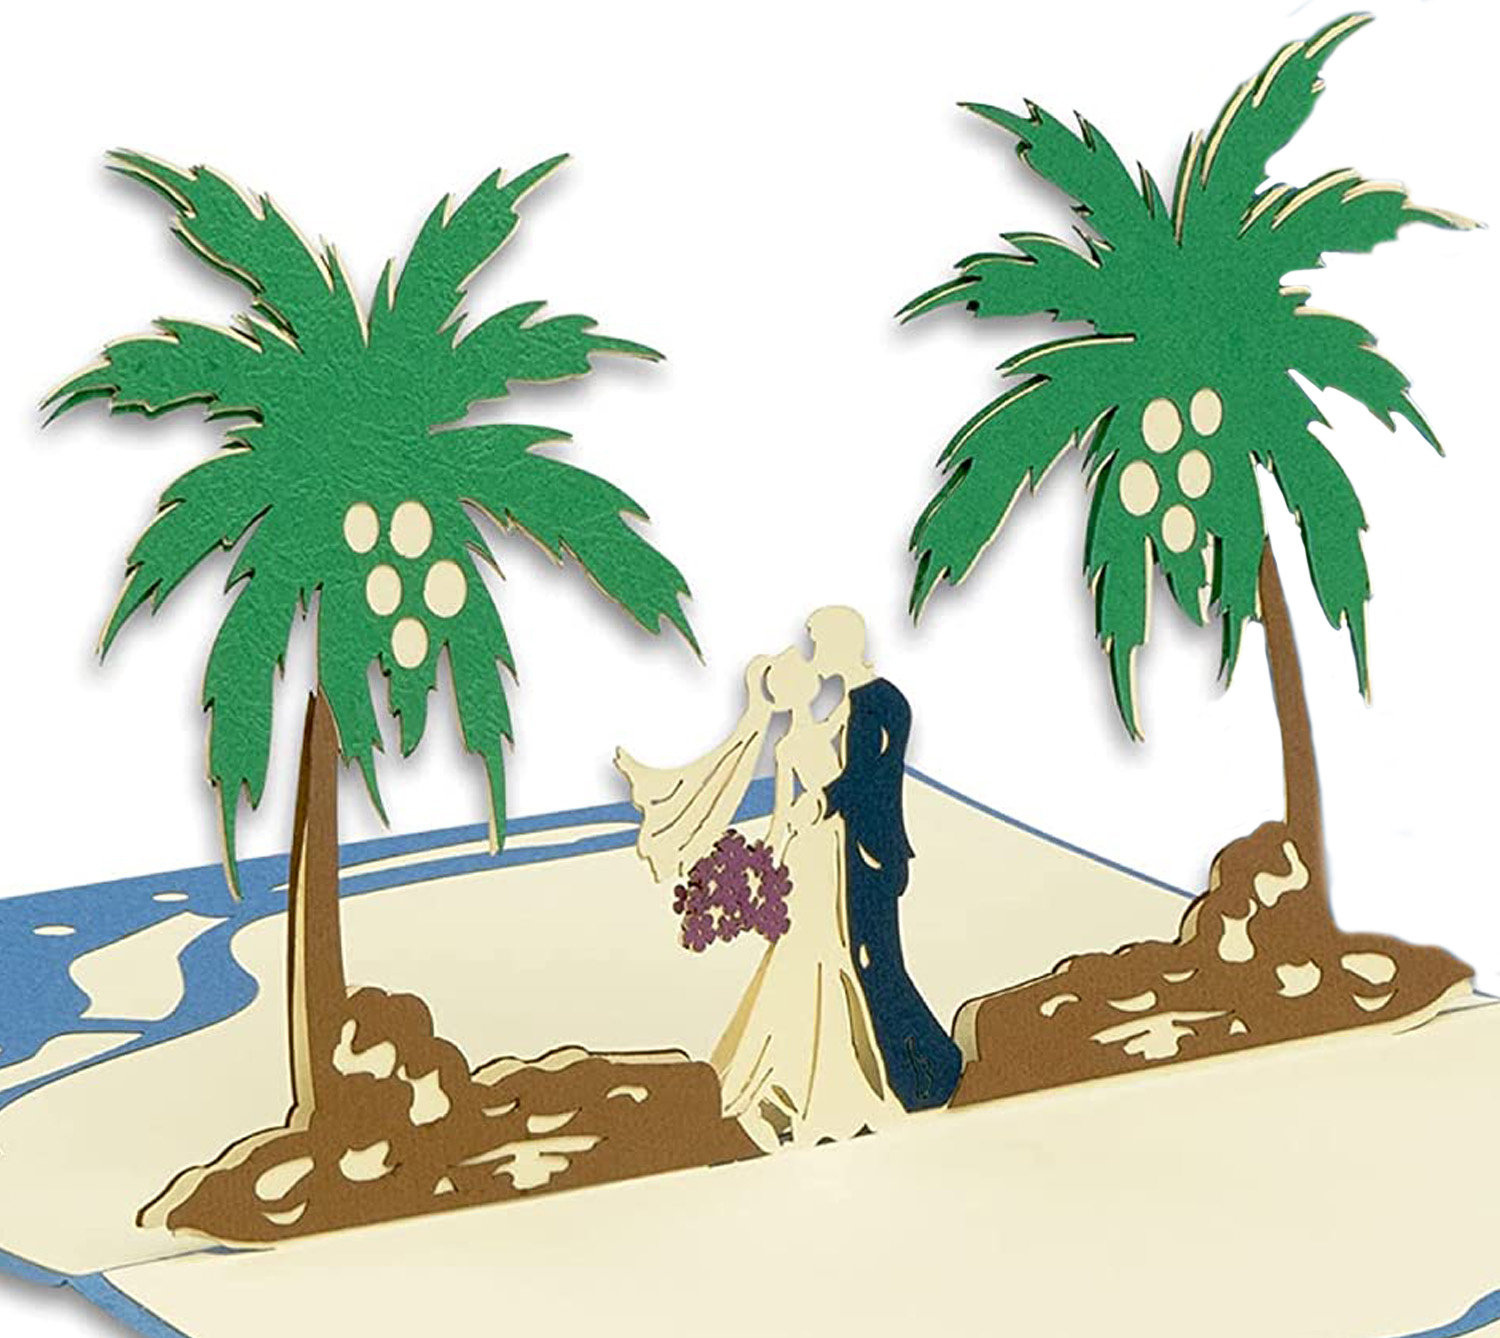 LINPOPUP Pop Up Karte Hochzeit, Hochzeitskarte, 3D Karten Grußkarten Hochzeit, Hochzeitsglückwunsch,3D Hochzeitseinladungen, Hochzeitskarte Glückwunsch, Südsee Karibik Hochzeit, LIN17580, LINPopUp®, N340